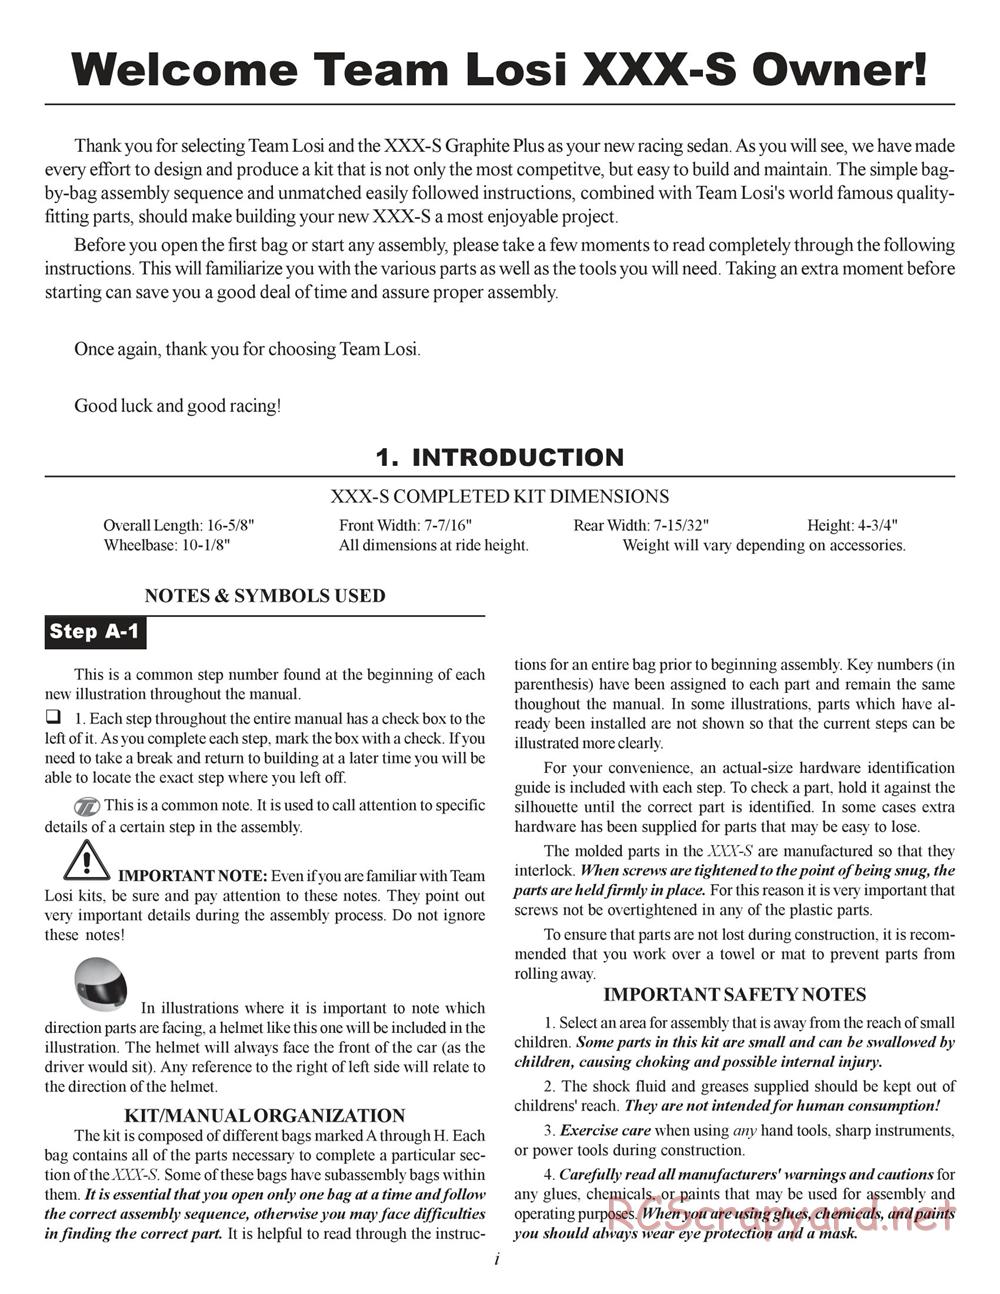 Team Losi - XXX-S Graphite Plus - Manual - Page 2